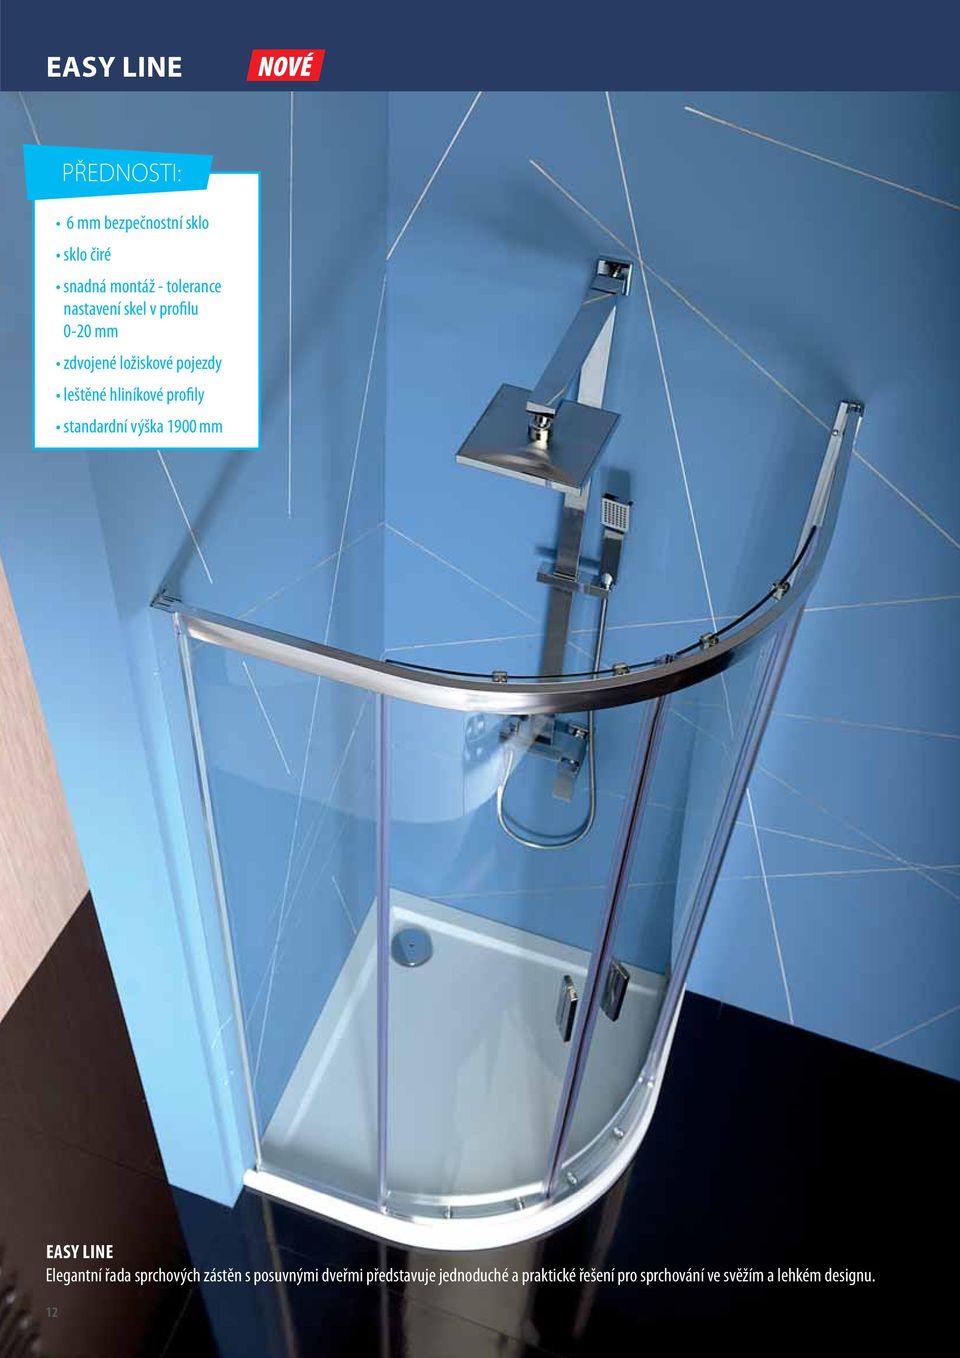 profily standardní výška 1900 mm EASY LINE Elegantní řada sprchových zástěn s